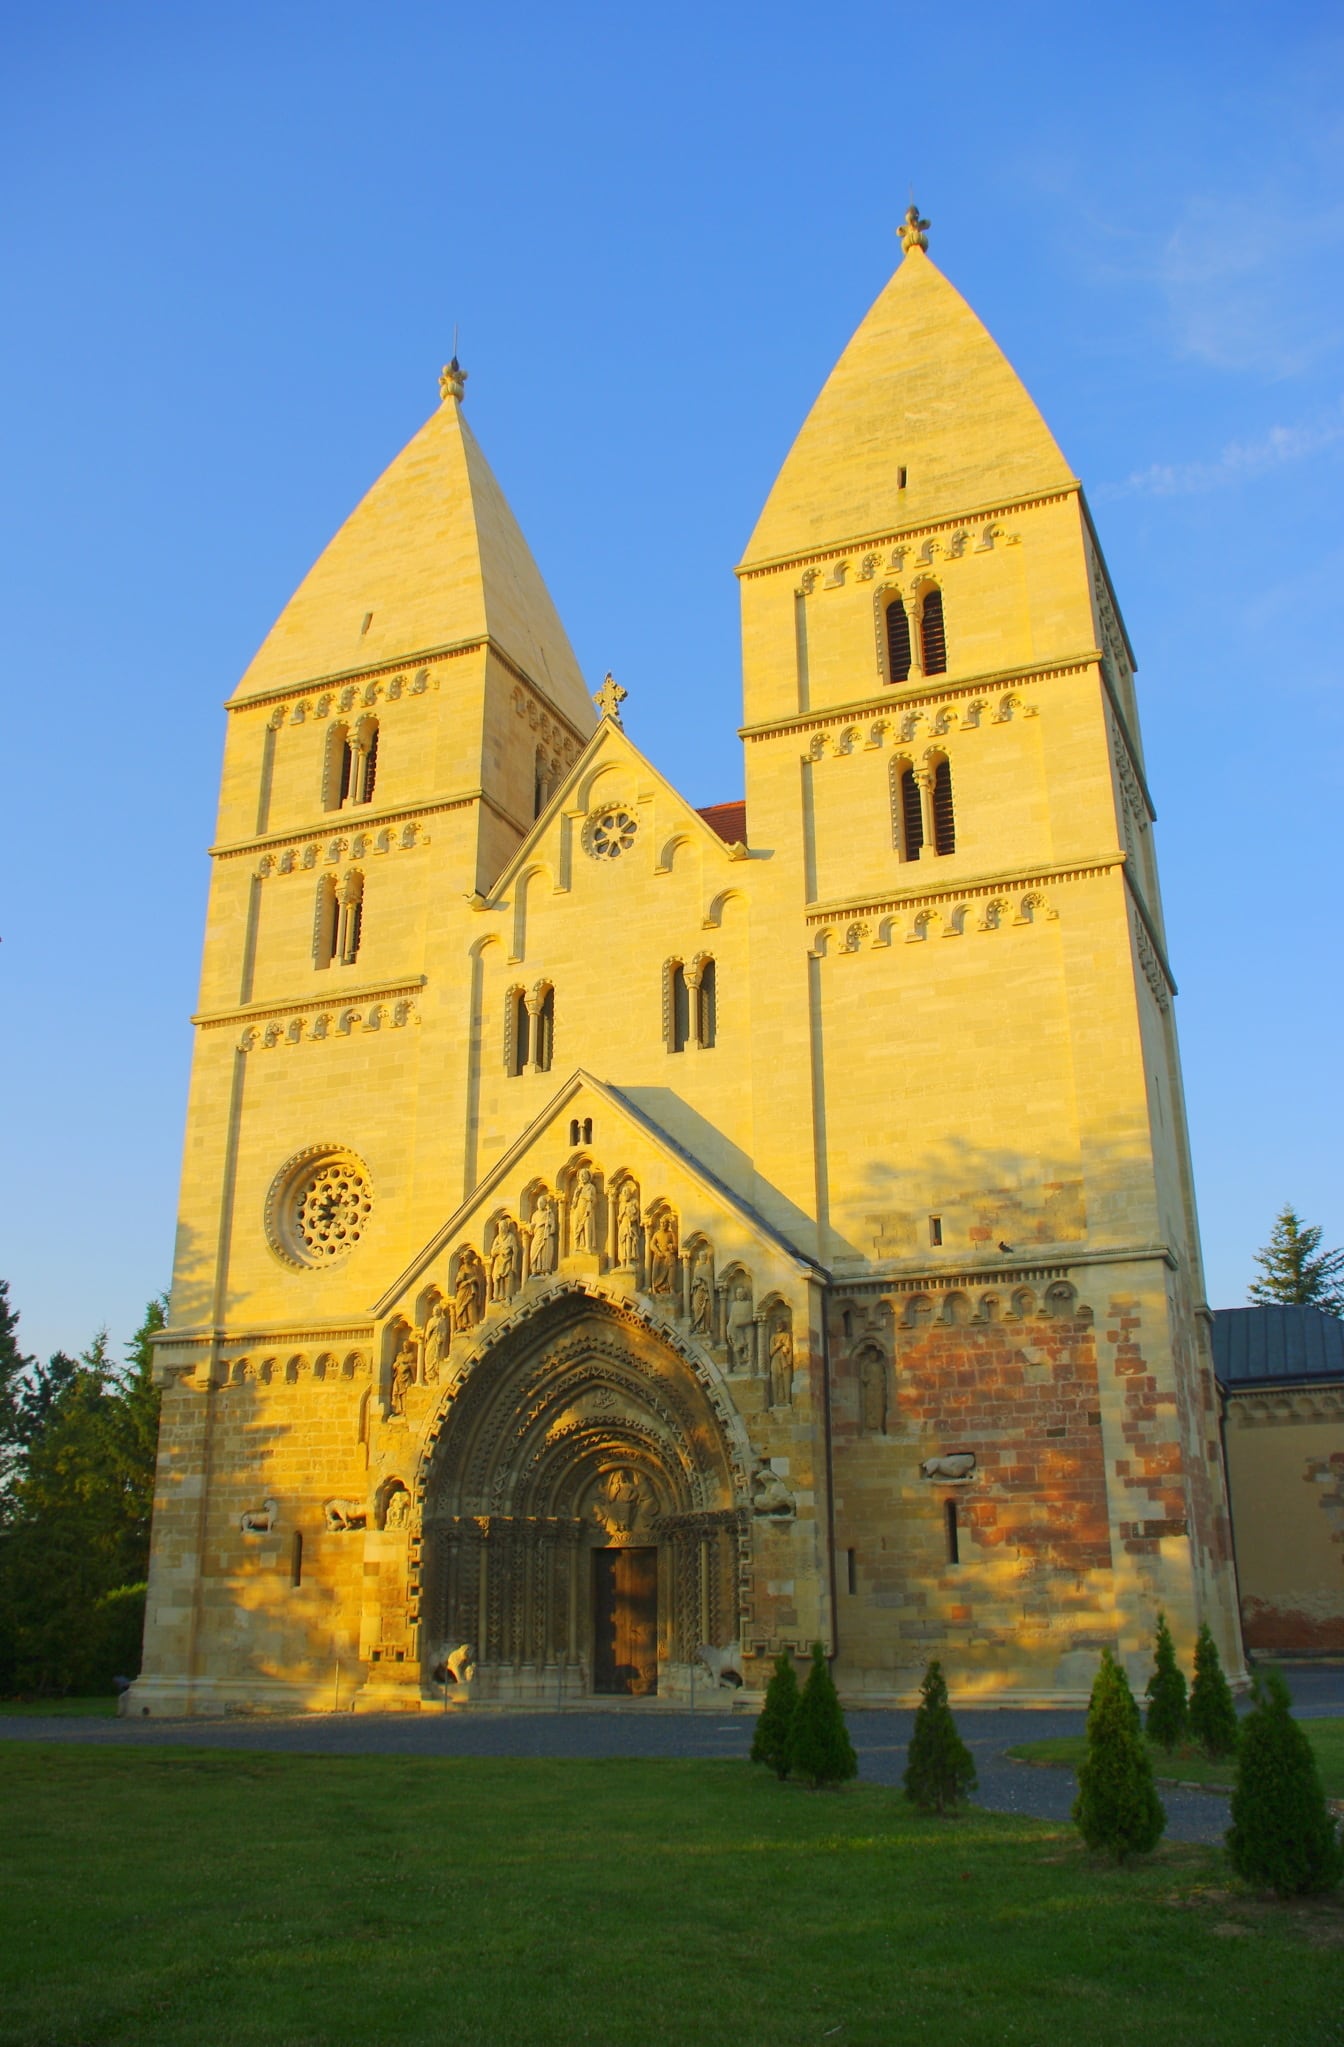 Sint-Jorisabdij middeleeuwse kerktorens in Jaki, Hongarije